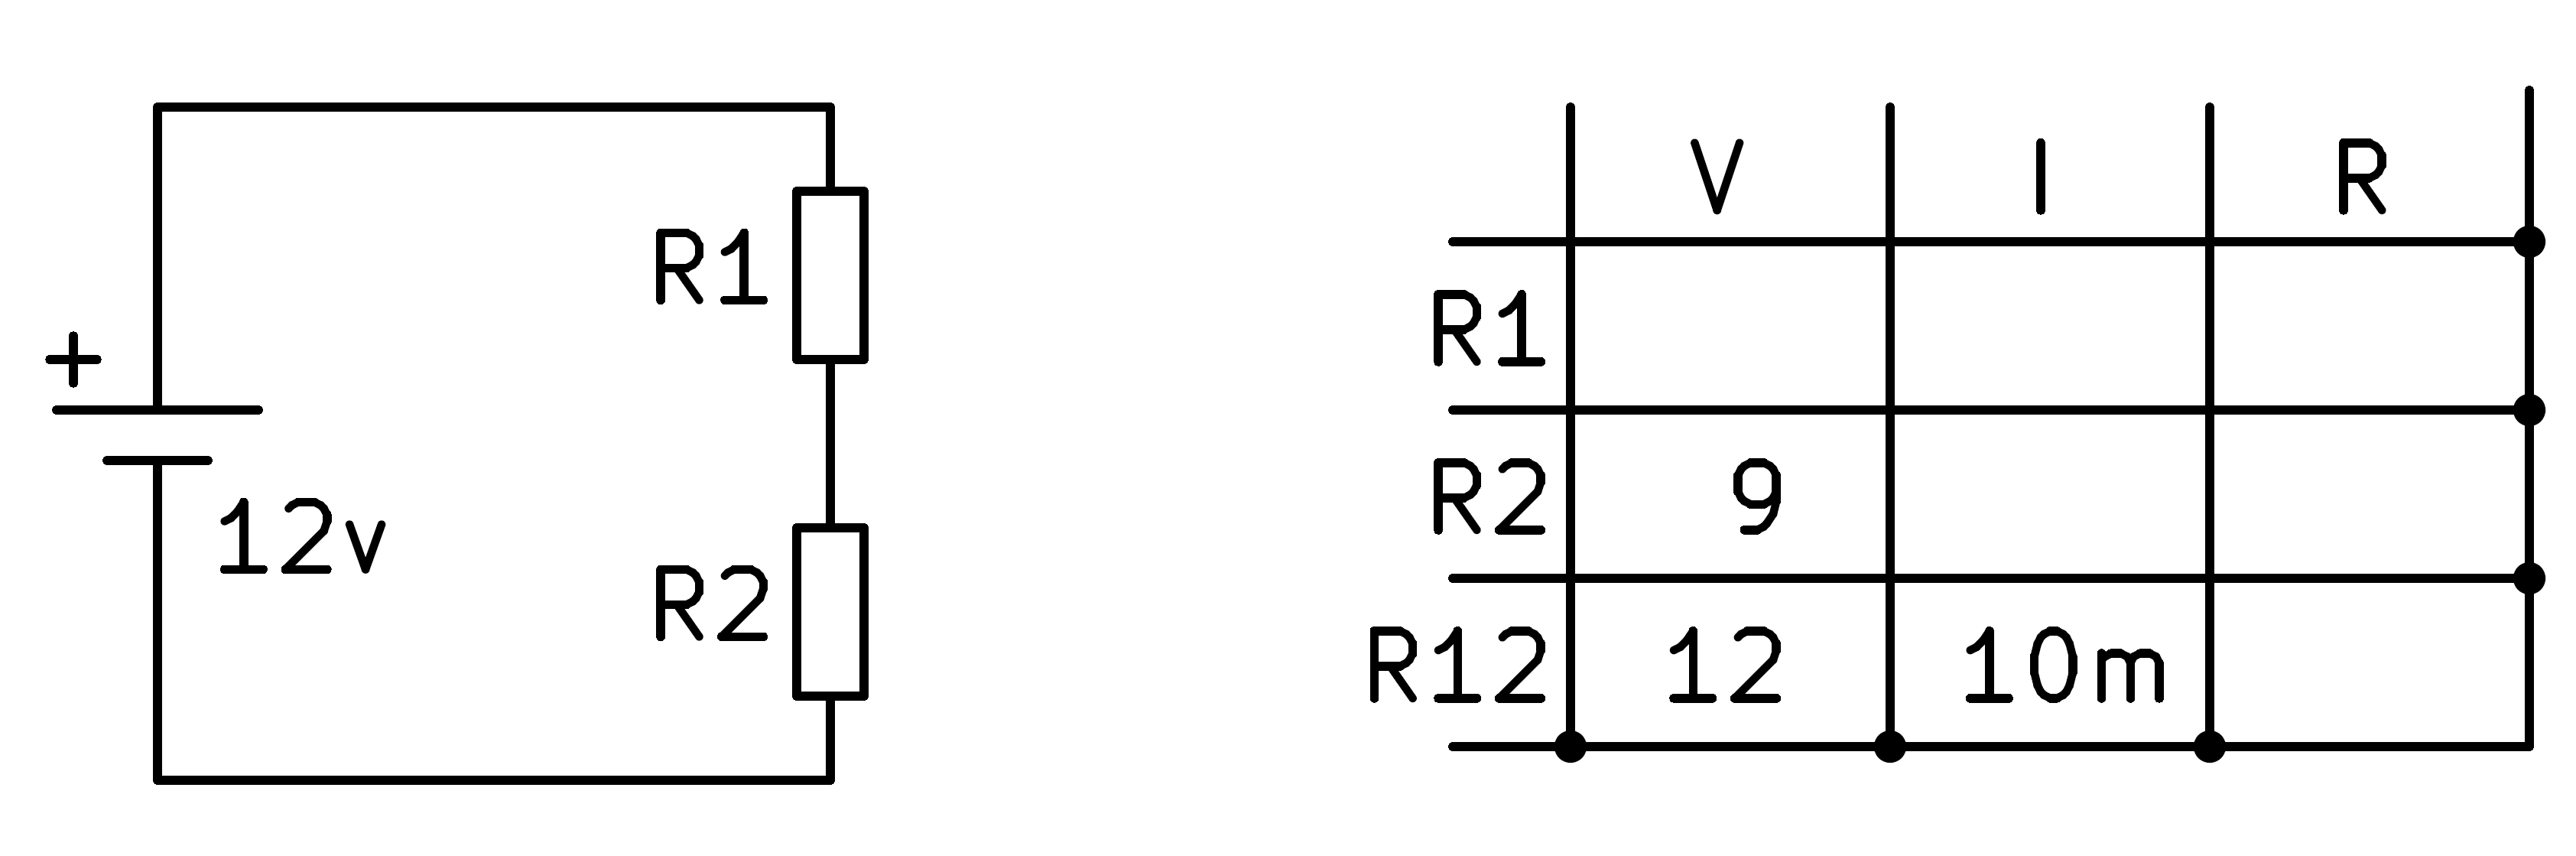 Circuito divisor de tensión con dos resistencias desconocidas.